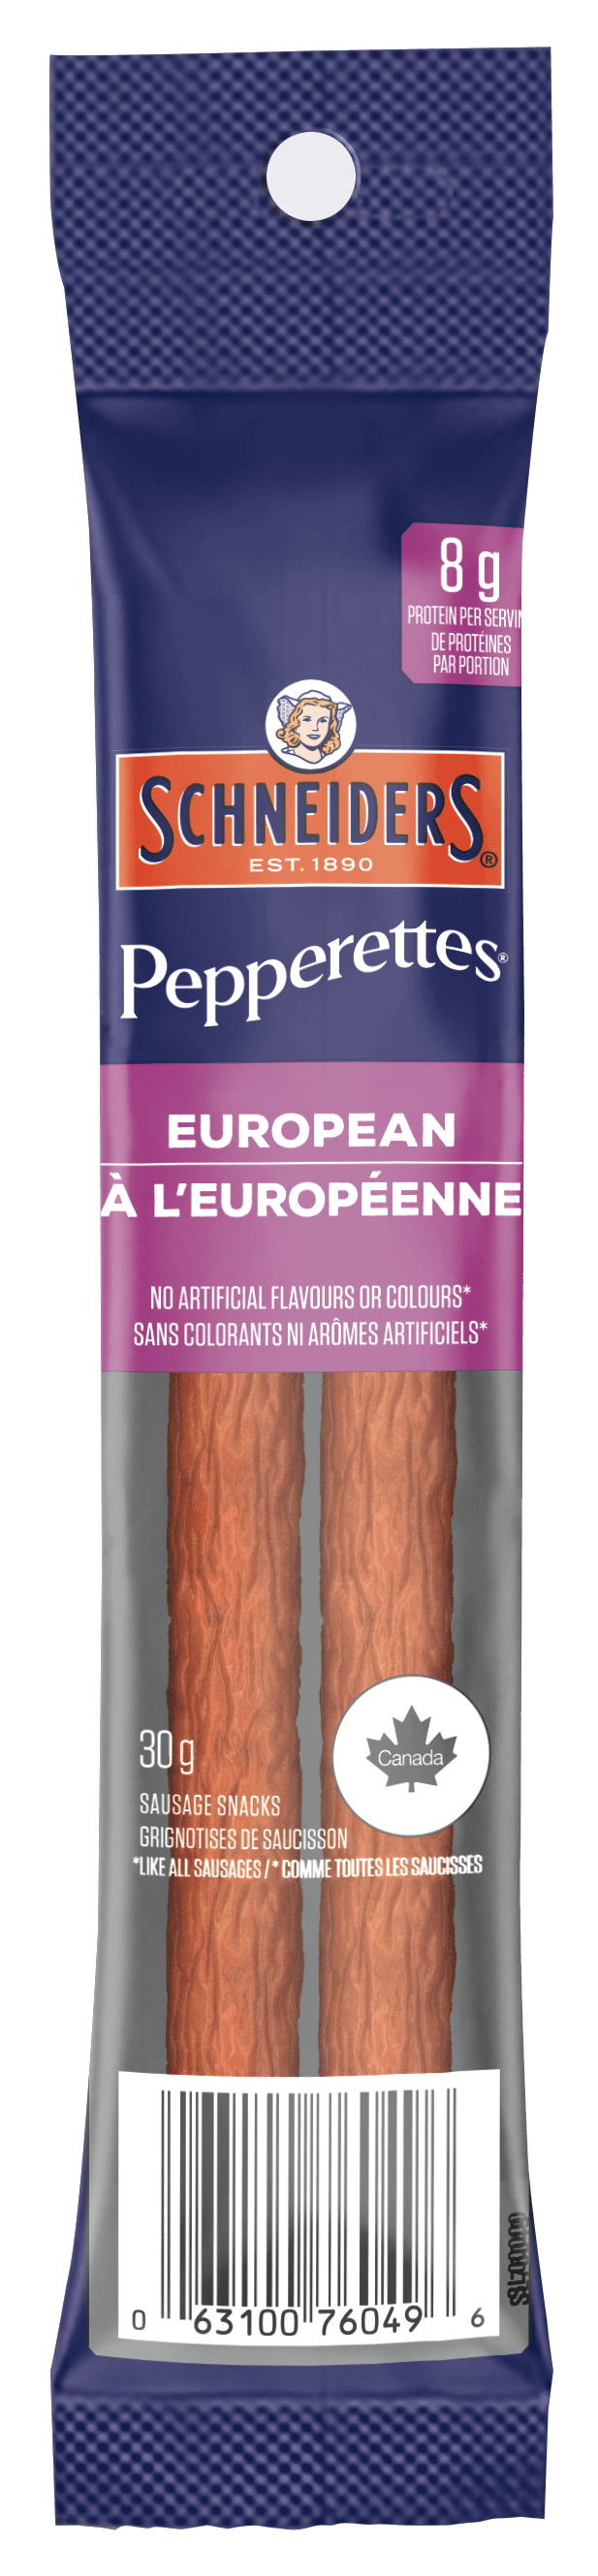 À l'européenne Pepperettes Format Collation